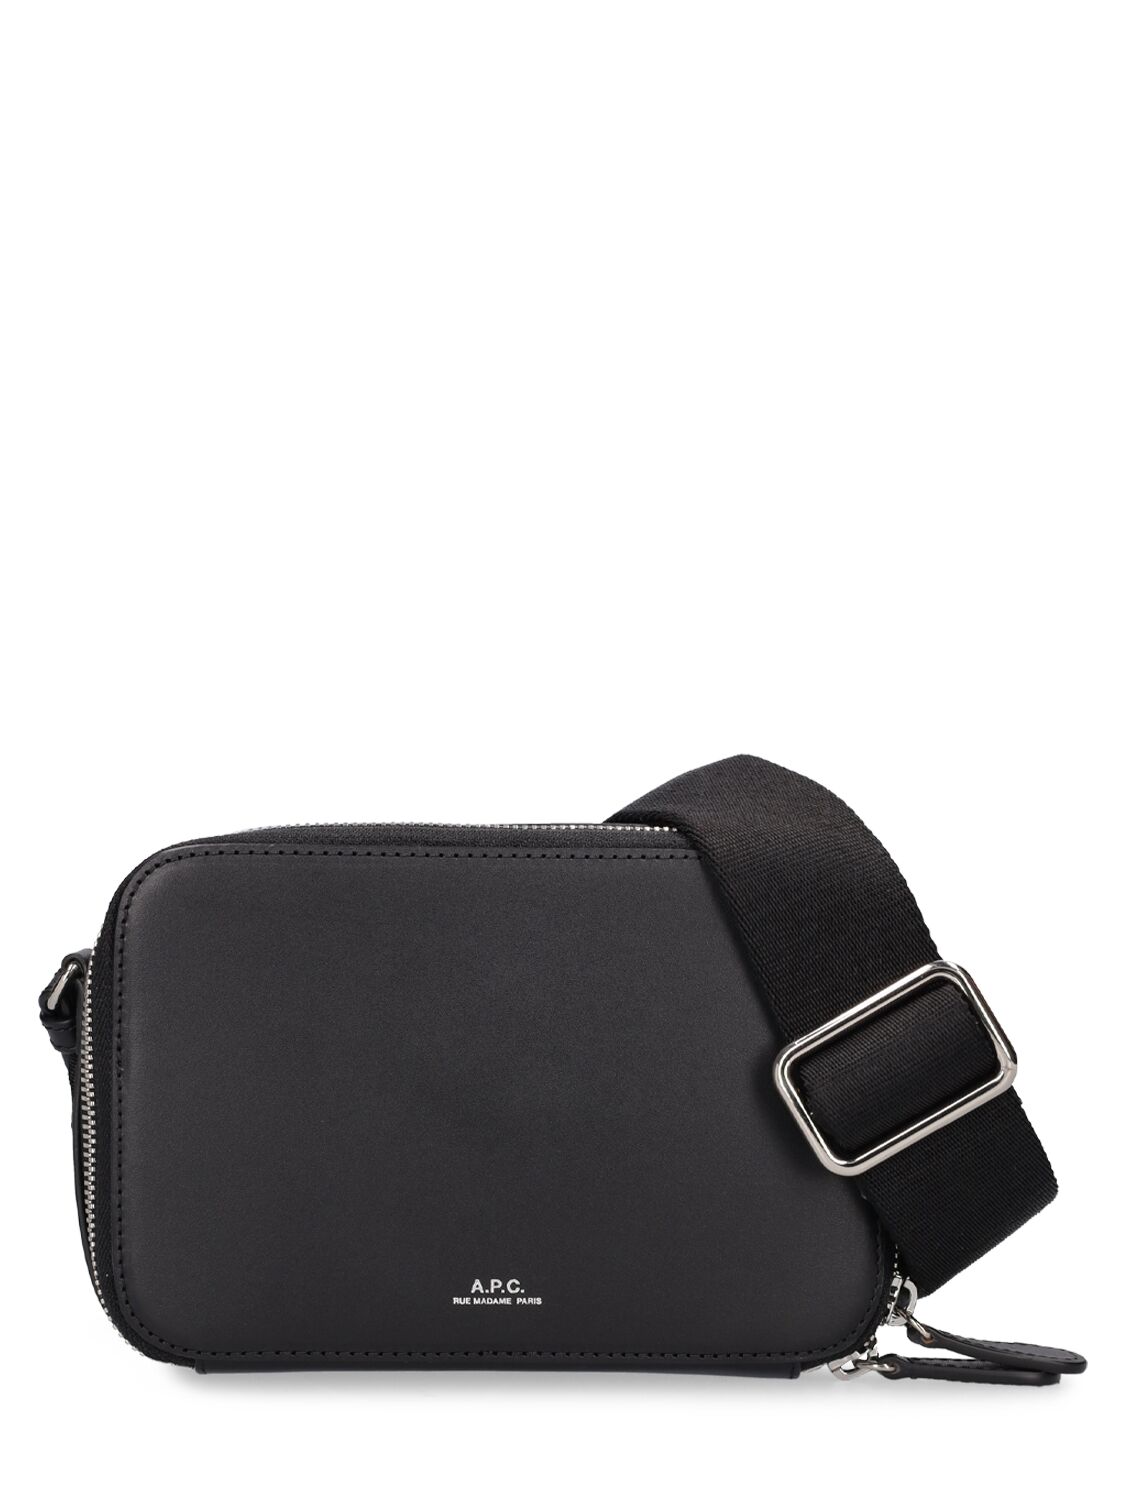 Apc Logo Leather Camera Bag In Black